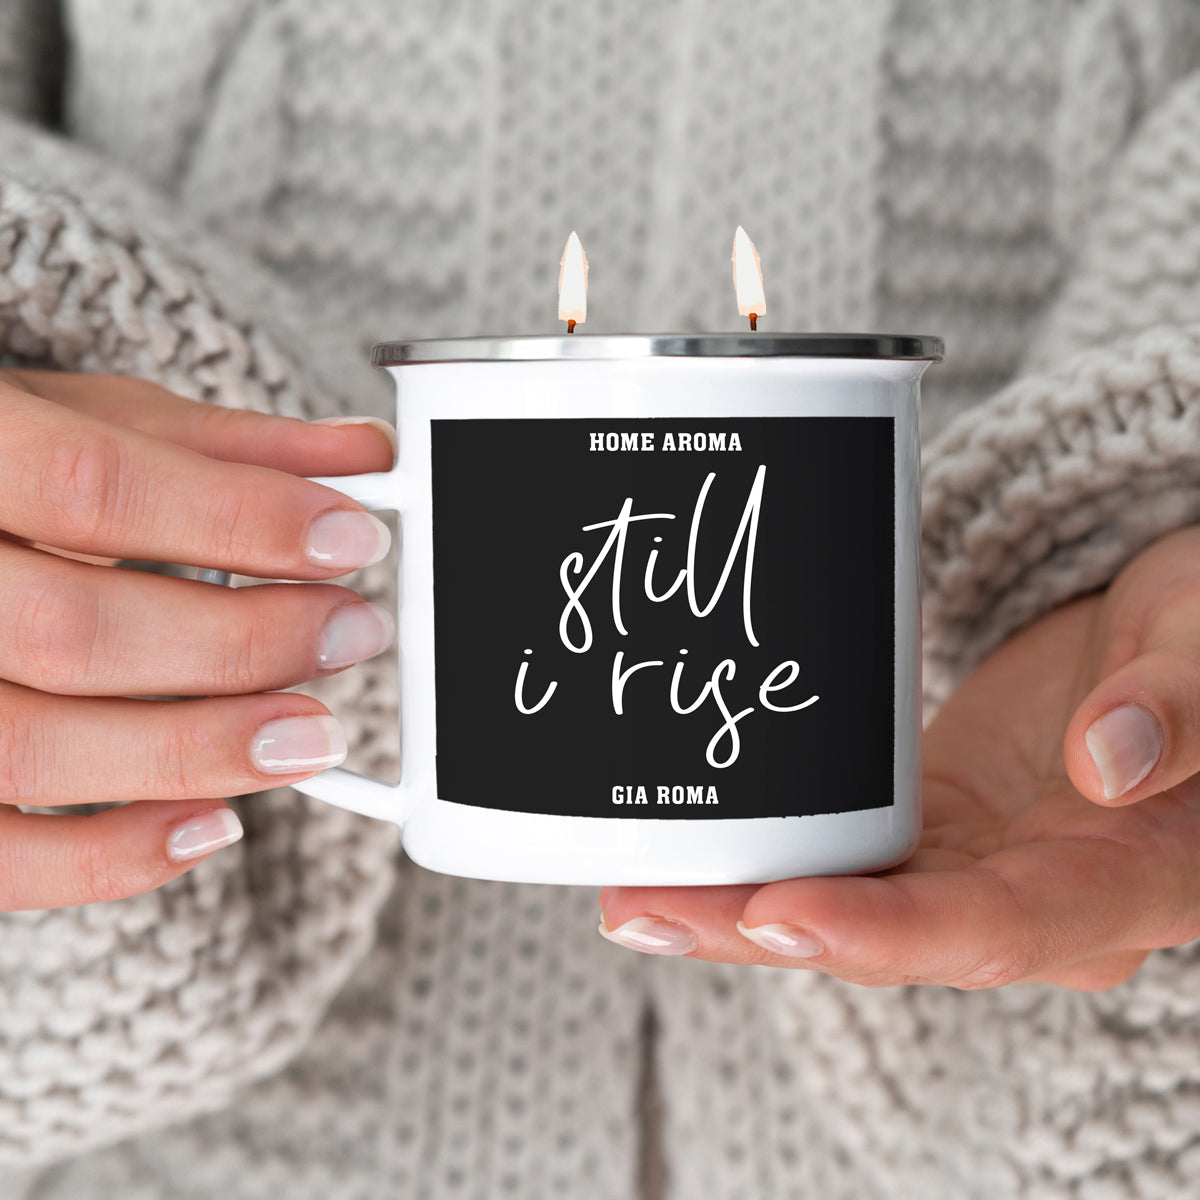 Still I rise mug candle